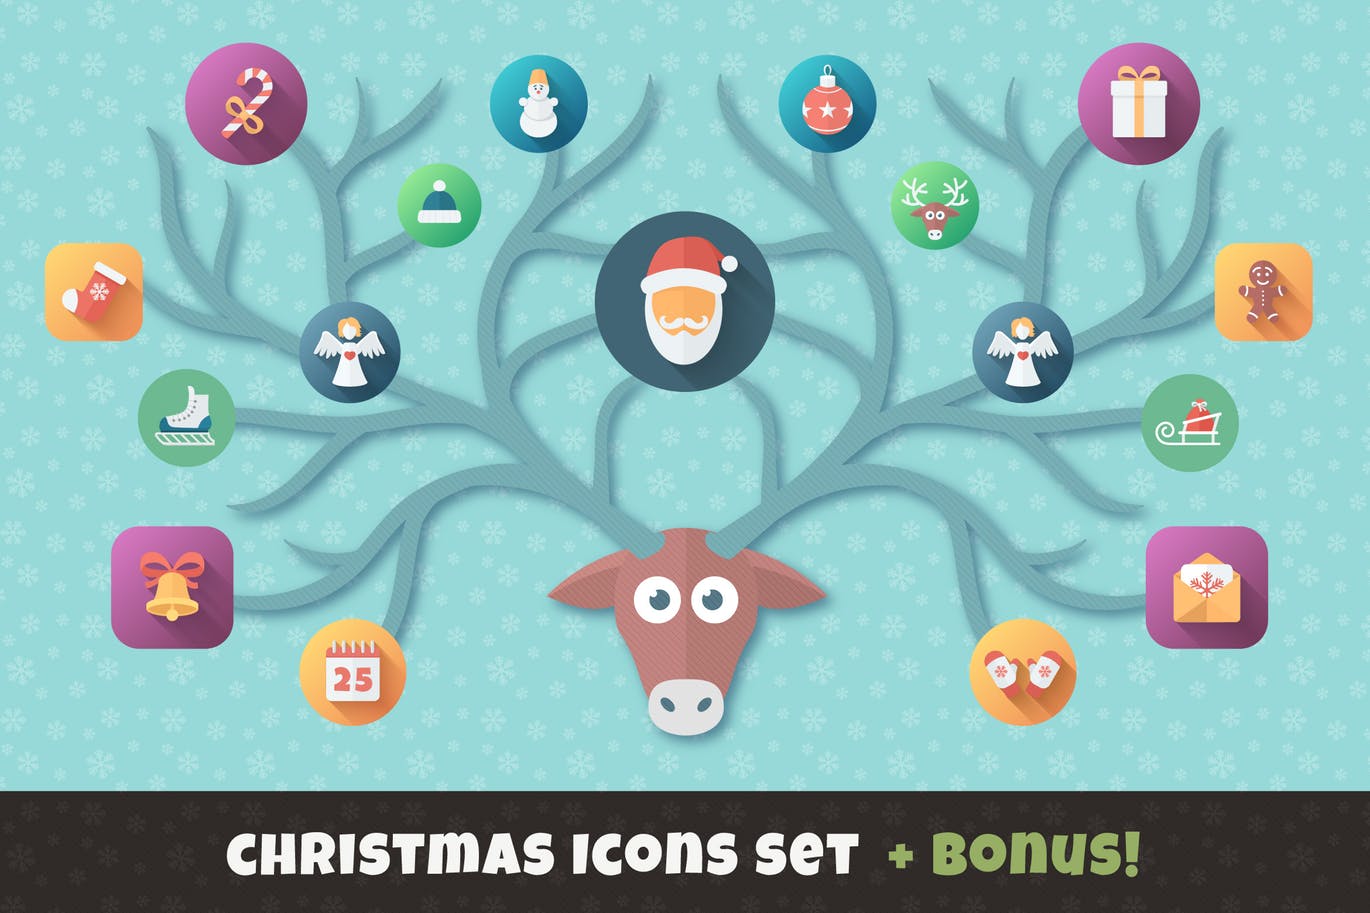 扁平设计风格圣诞节主题矢量素材包 Christmas Flat Set | Vector Icons Bundle插图